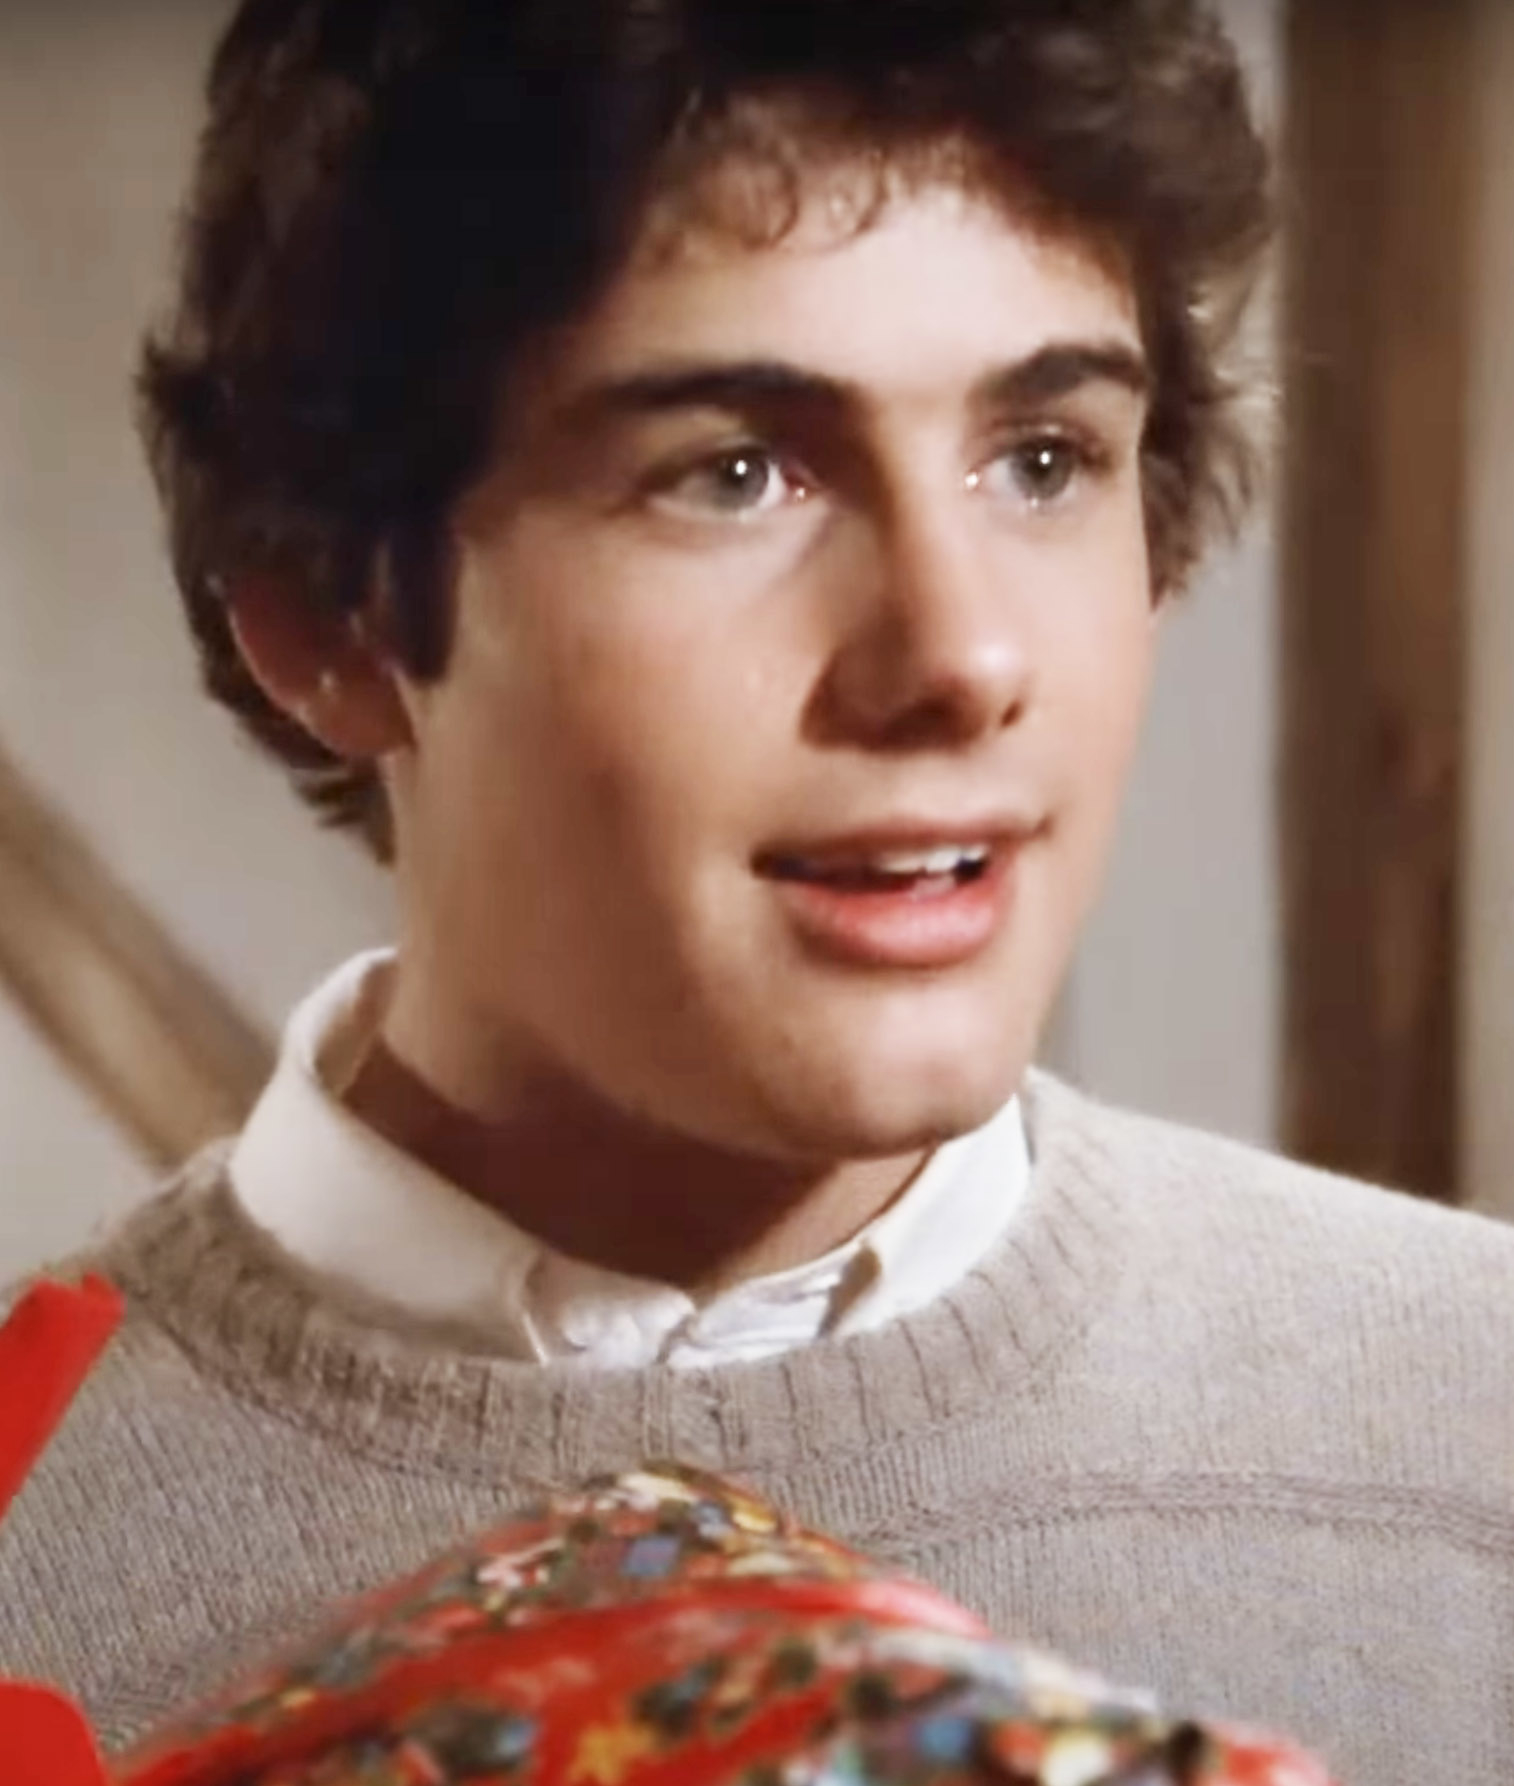 Close-up of Zach in a sweater